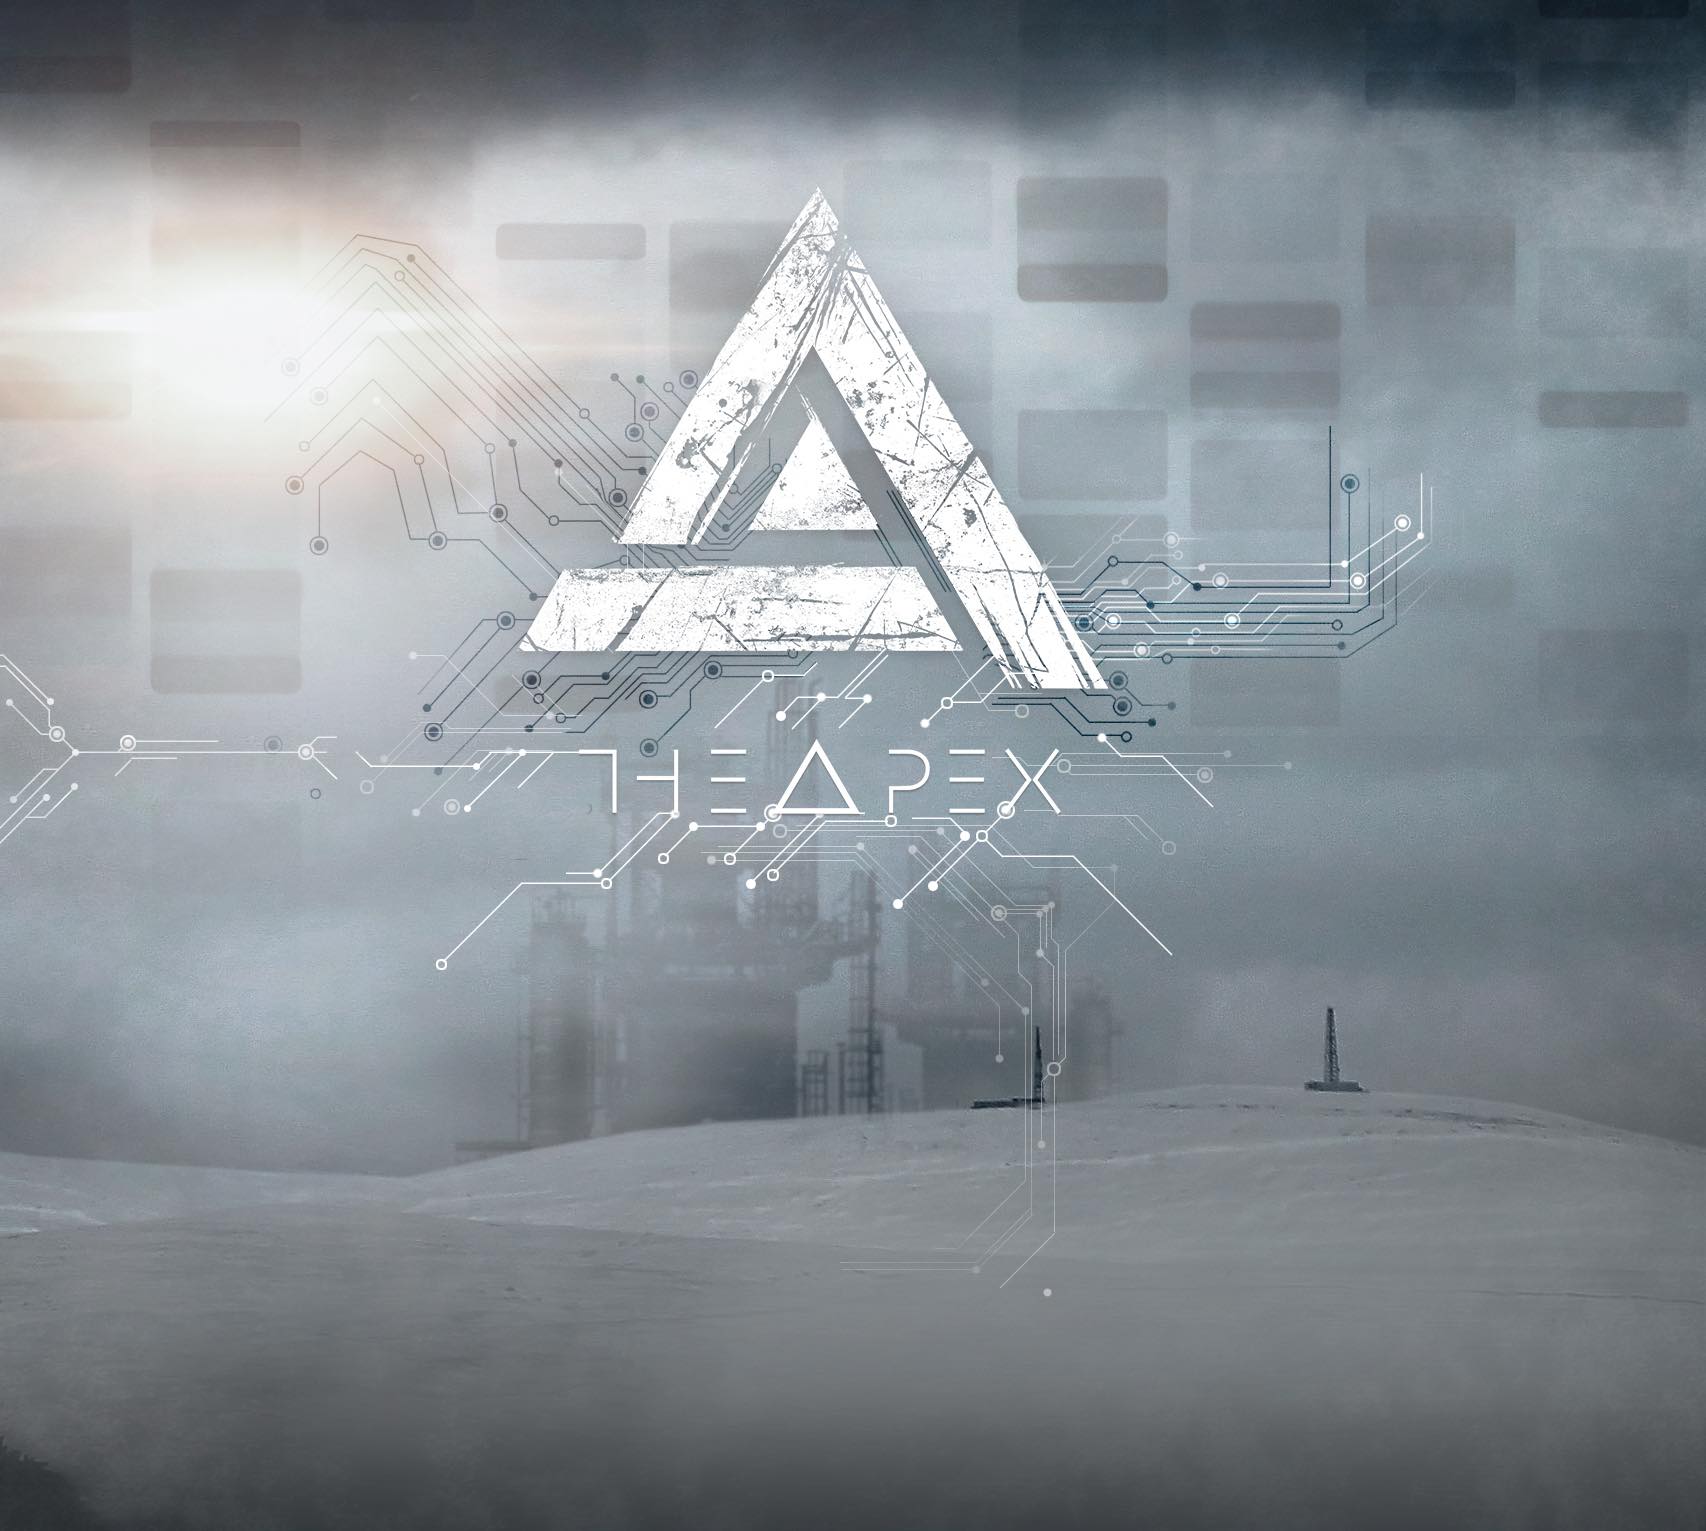 THE APEX - The Apex